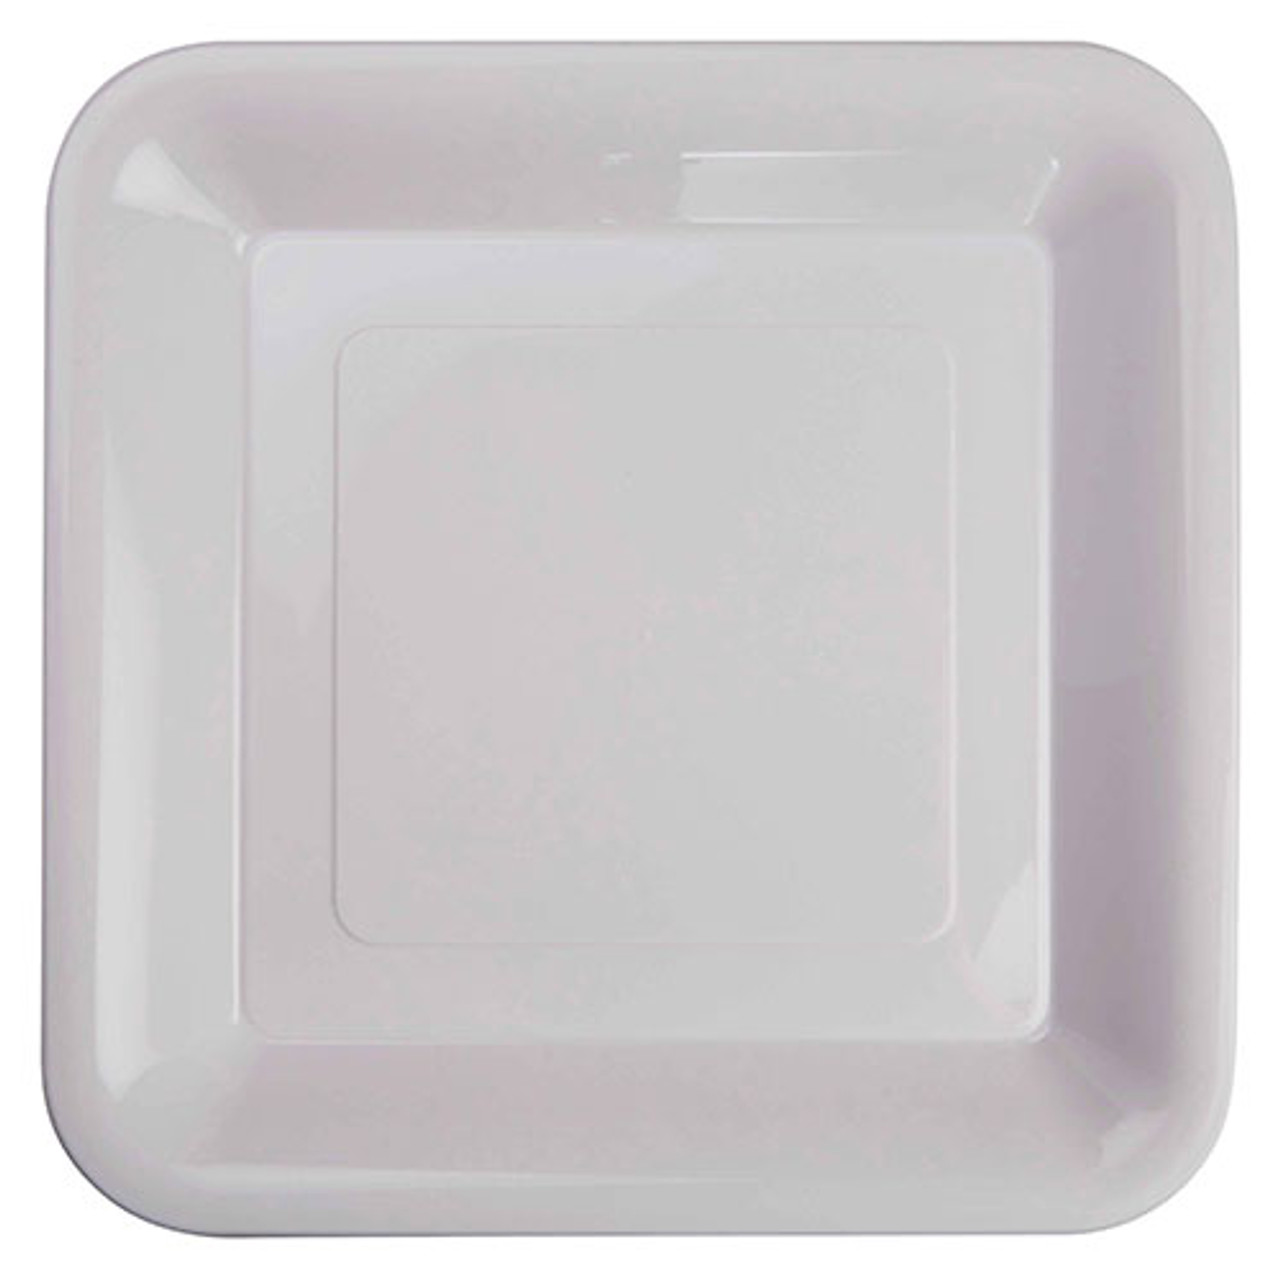 square plastic plates